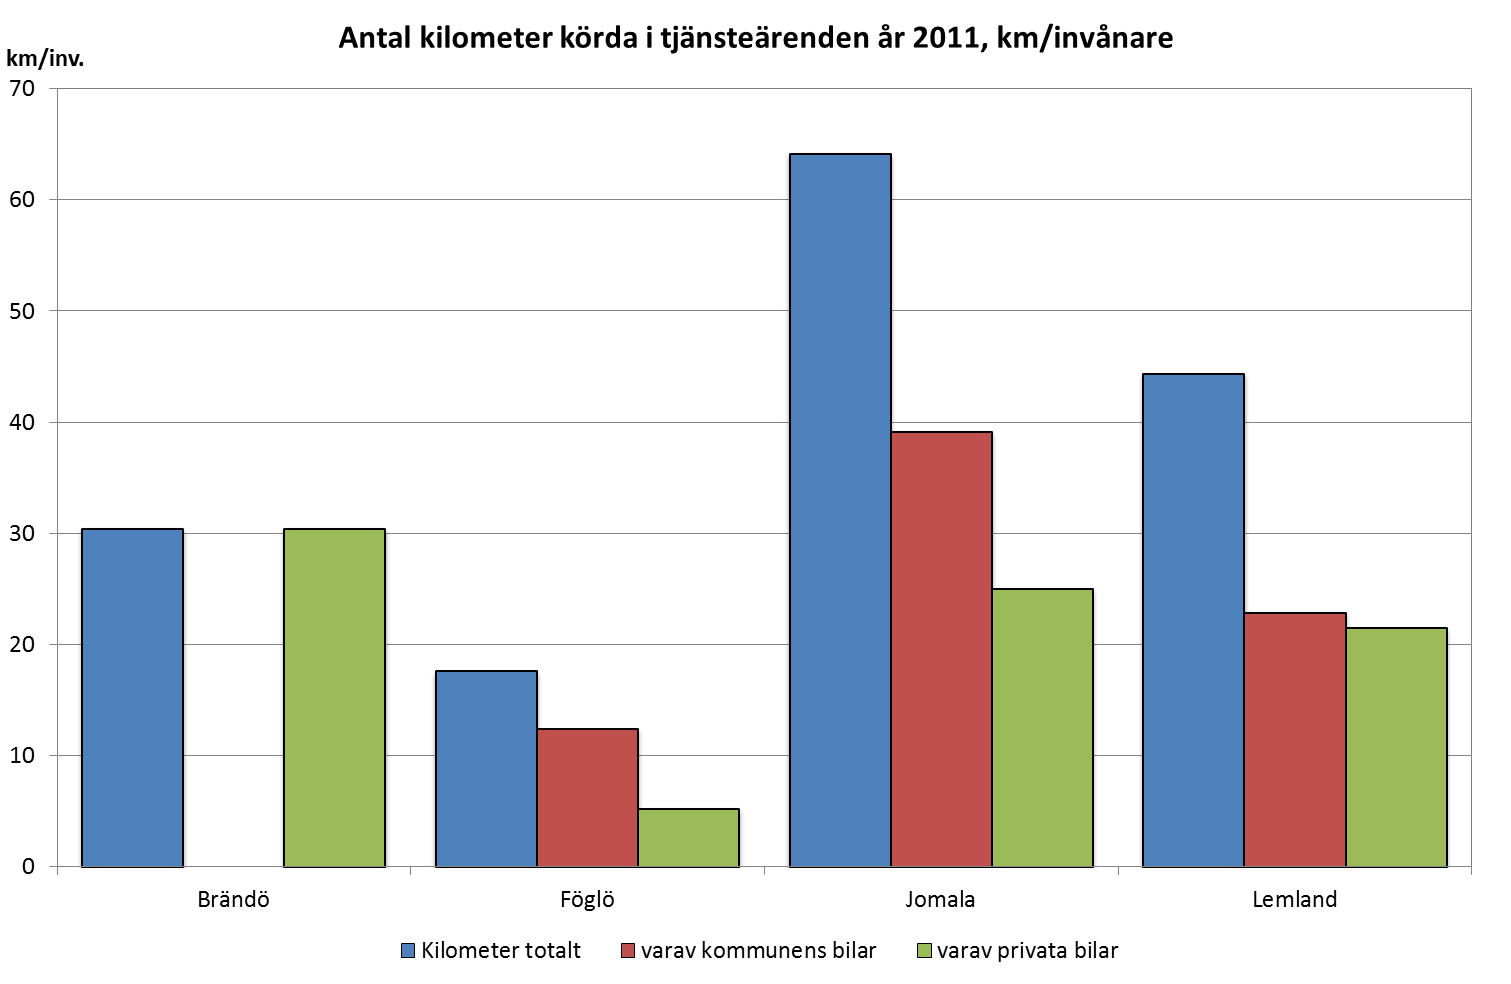 Antal kilometer körda totalt i tjänsteärenden var högst i Jomala 2011